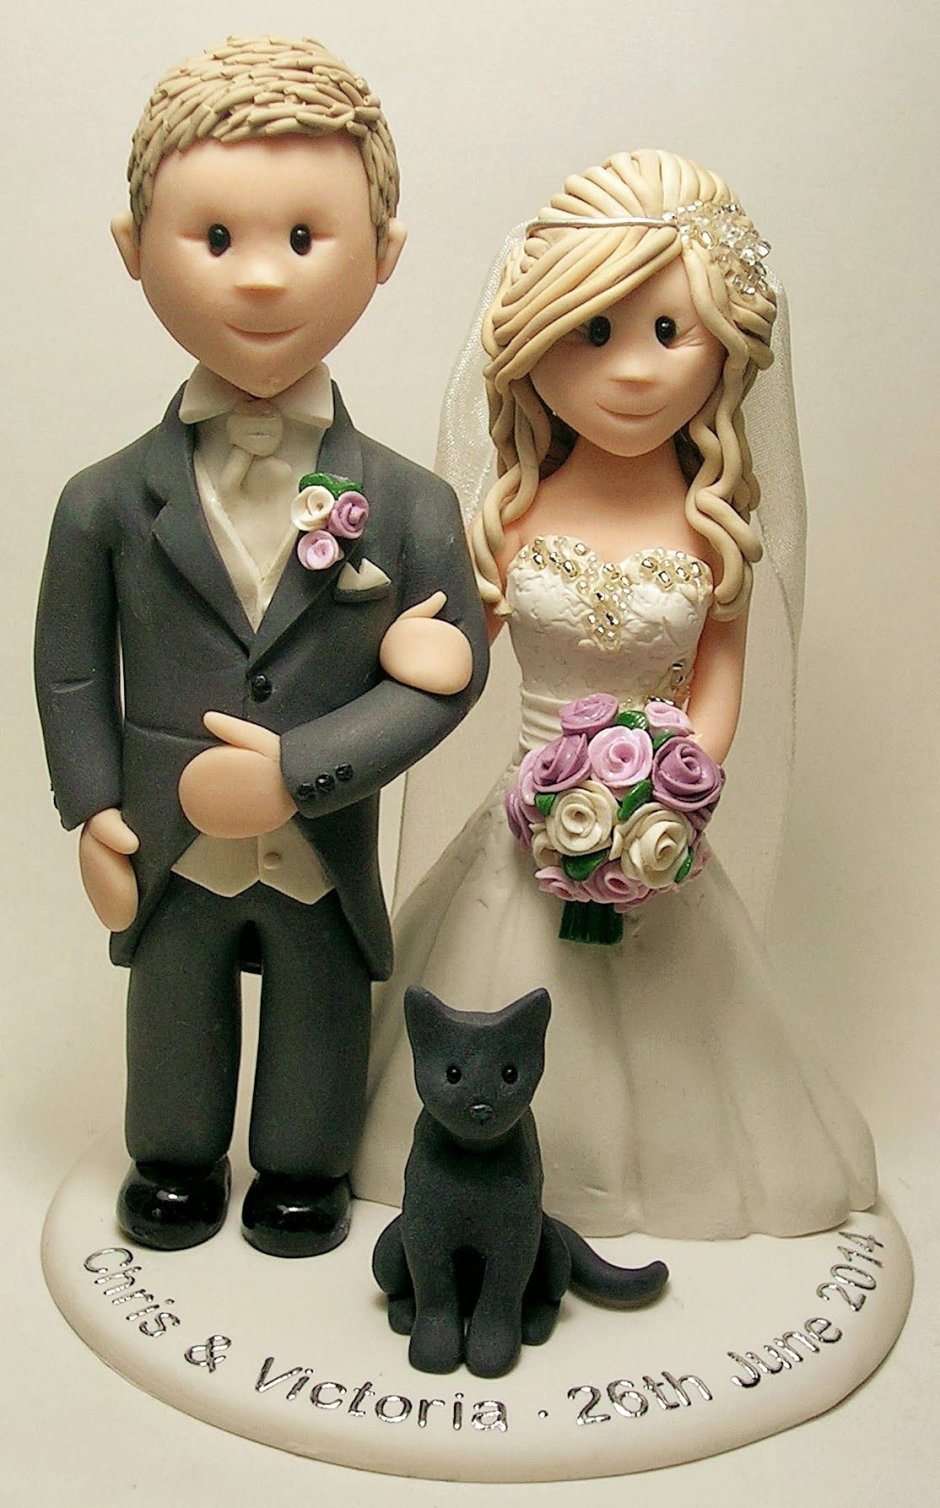 Фигуры на торт жених и невеста в стиле агентов